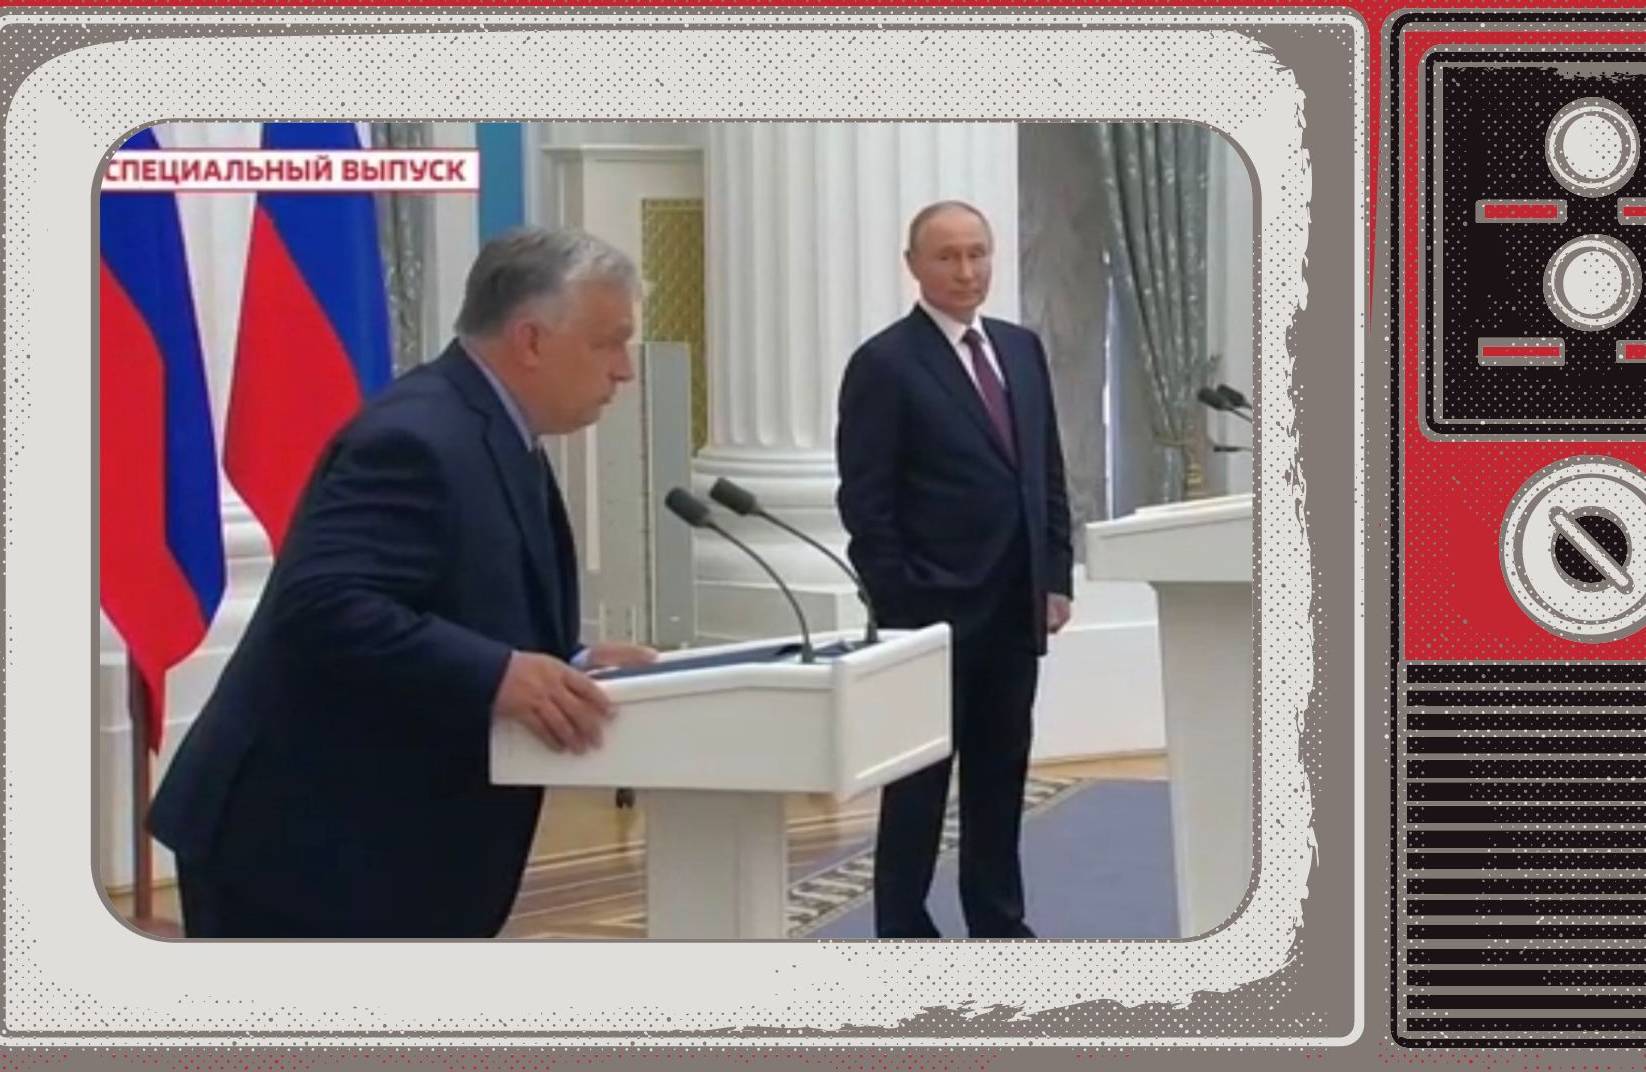 Grafika: w ramce starego telewizora wielki Prban i malutki Putin